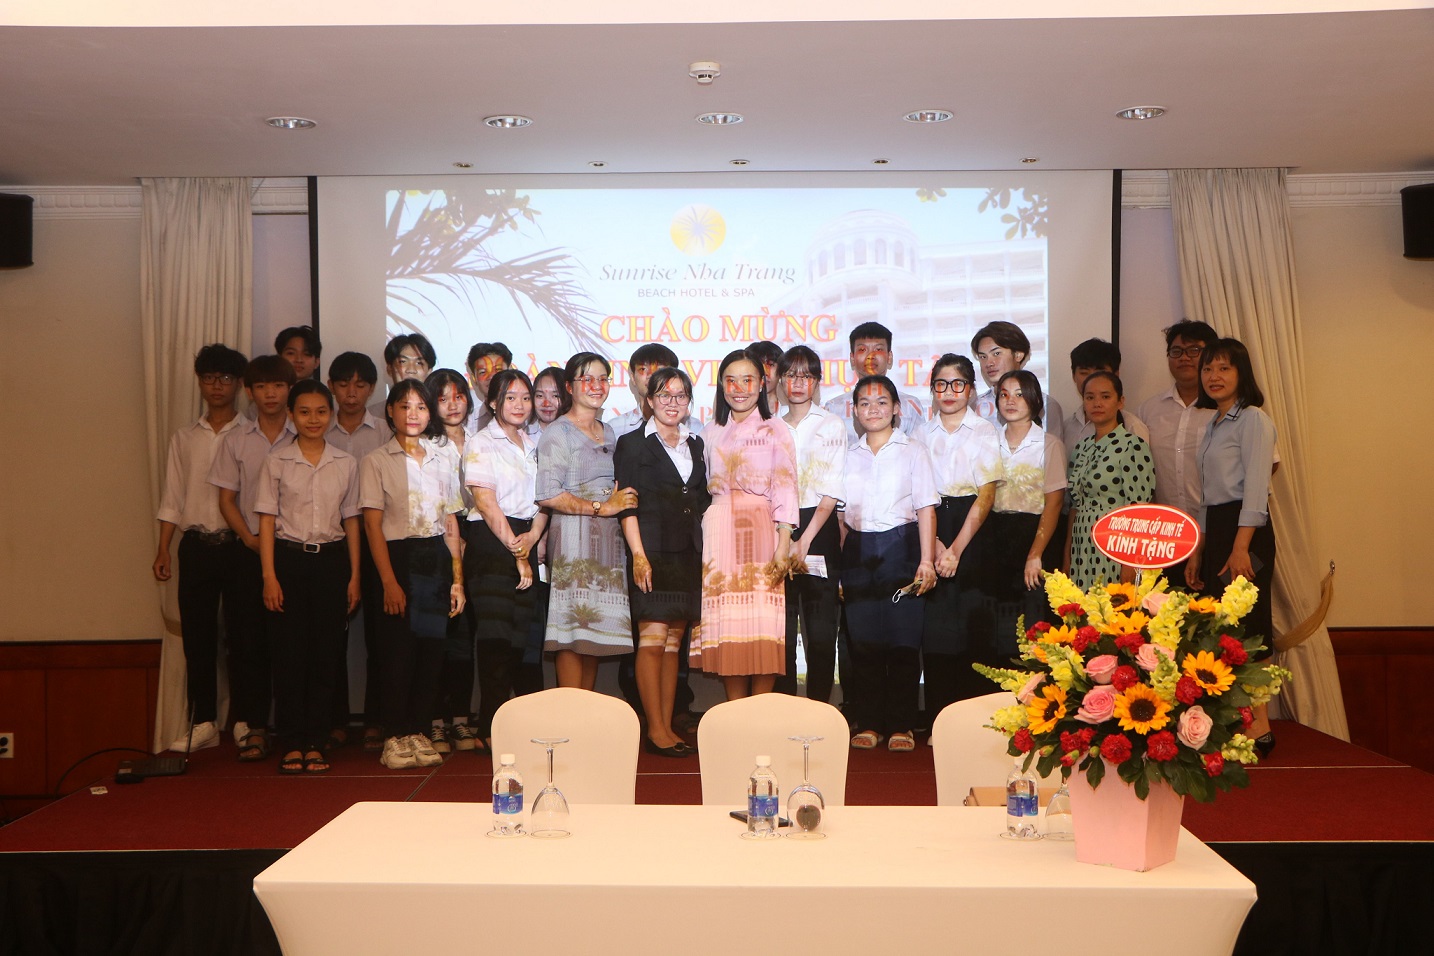 bầu cua tôm cá đổi thưởng uy tín
ánh Hòa đưa học sinh đi thực tập tại Khánh sạn Sunrise Nha Trang